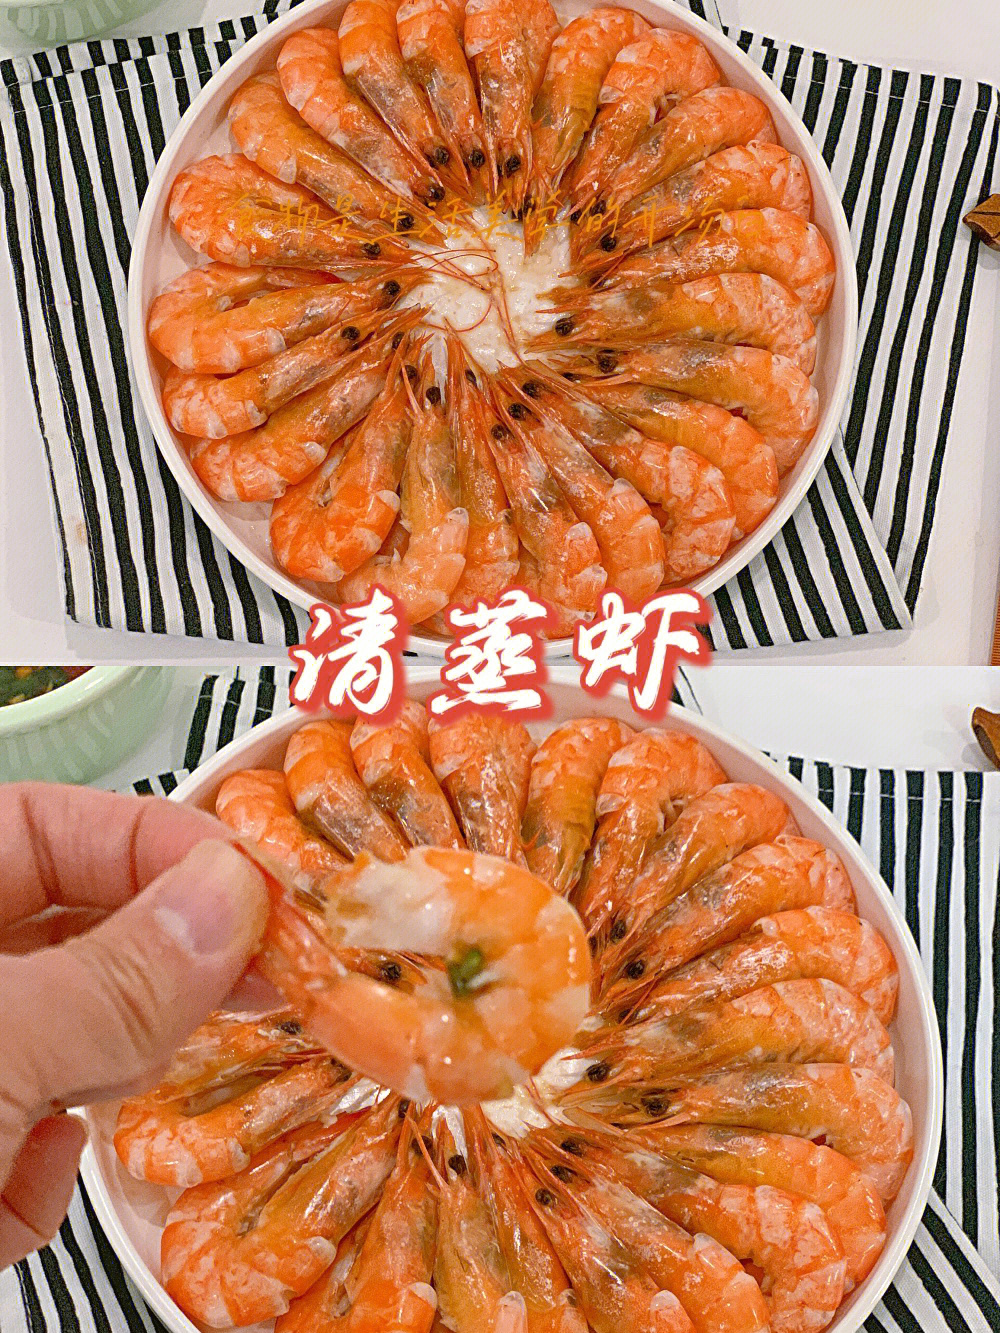 鲜美的做法无疑是白灼或清蒸,用mini微整烤箱,10分钟即可享用鲜美大虾